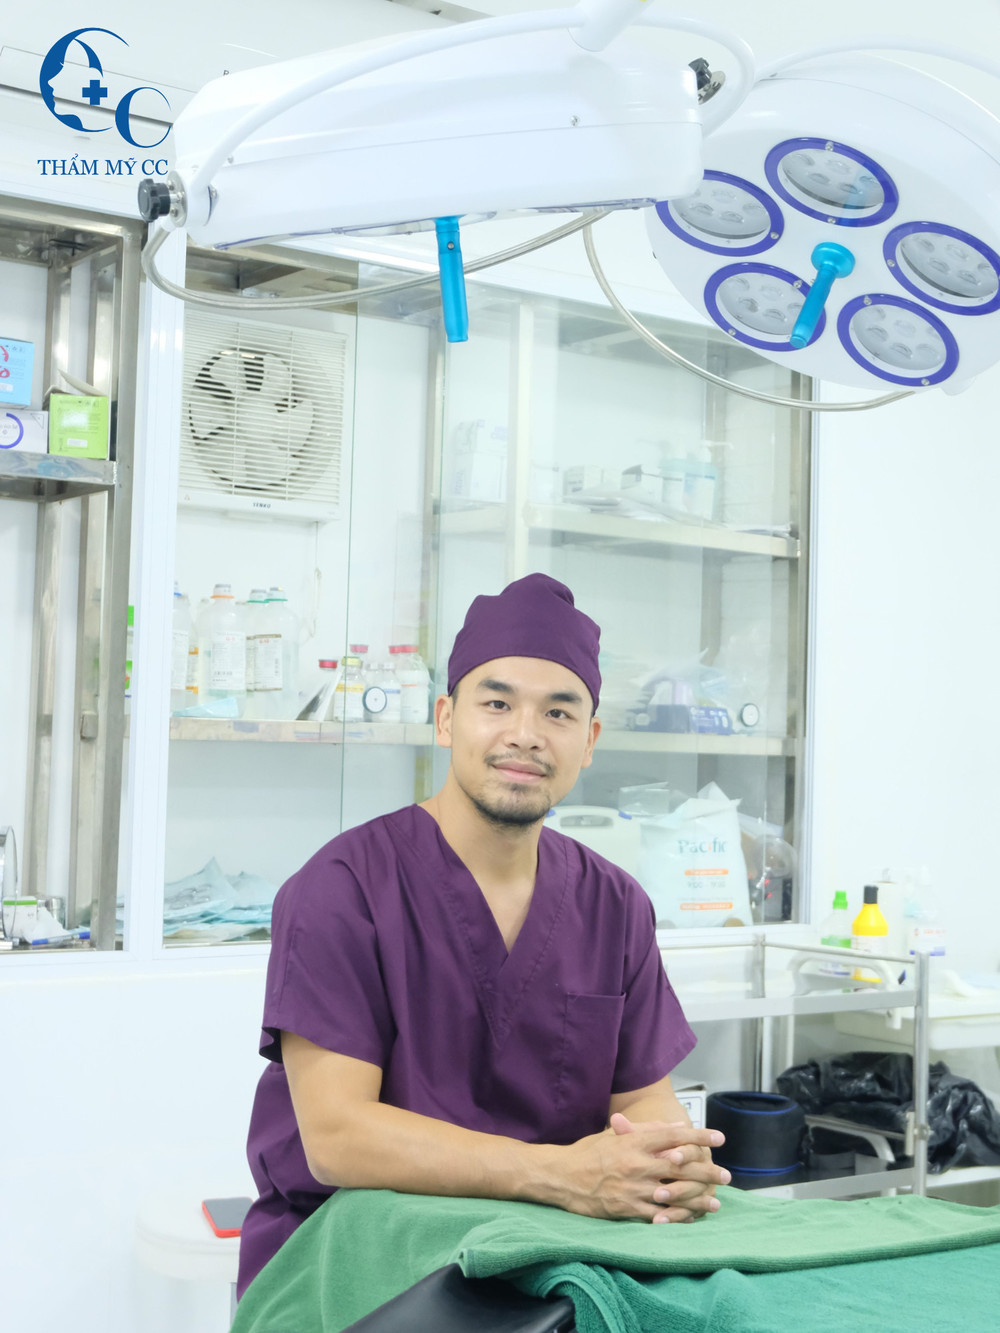  
Bác sĩ Đinh Quang Phúc